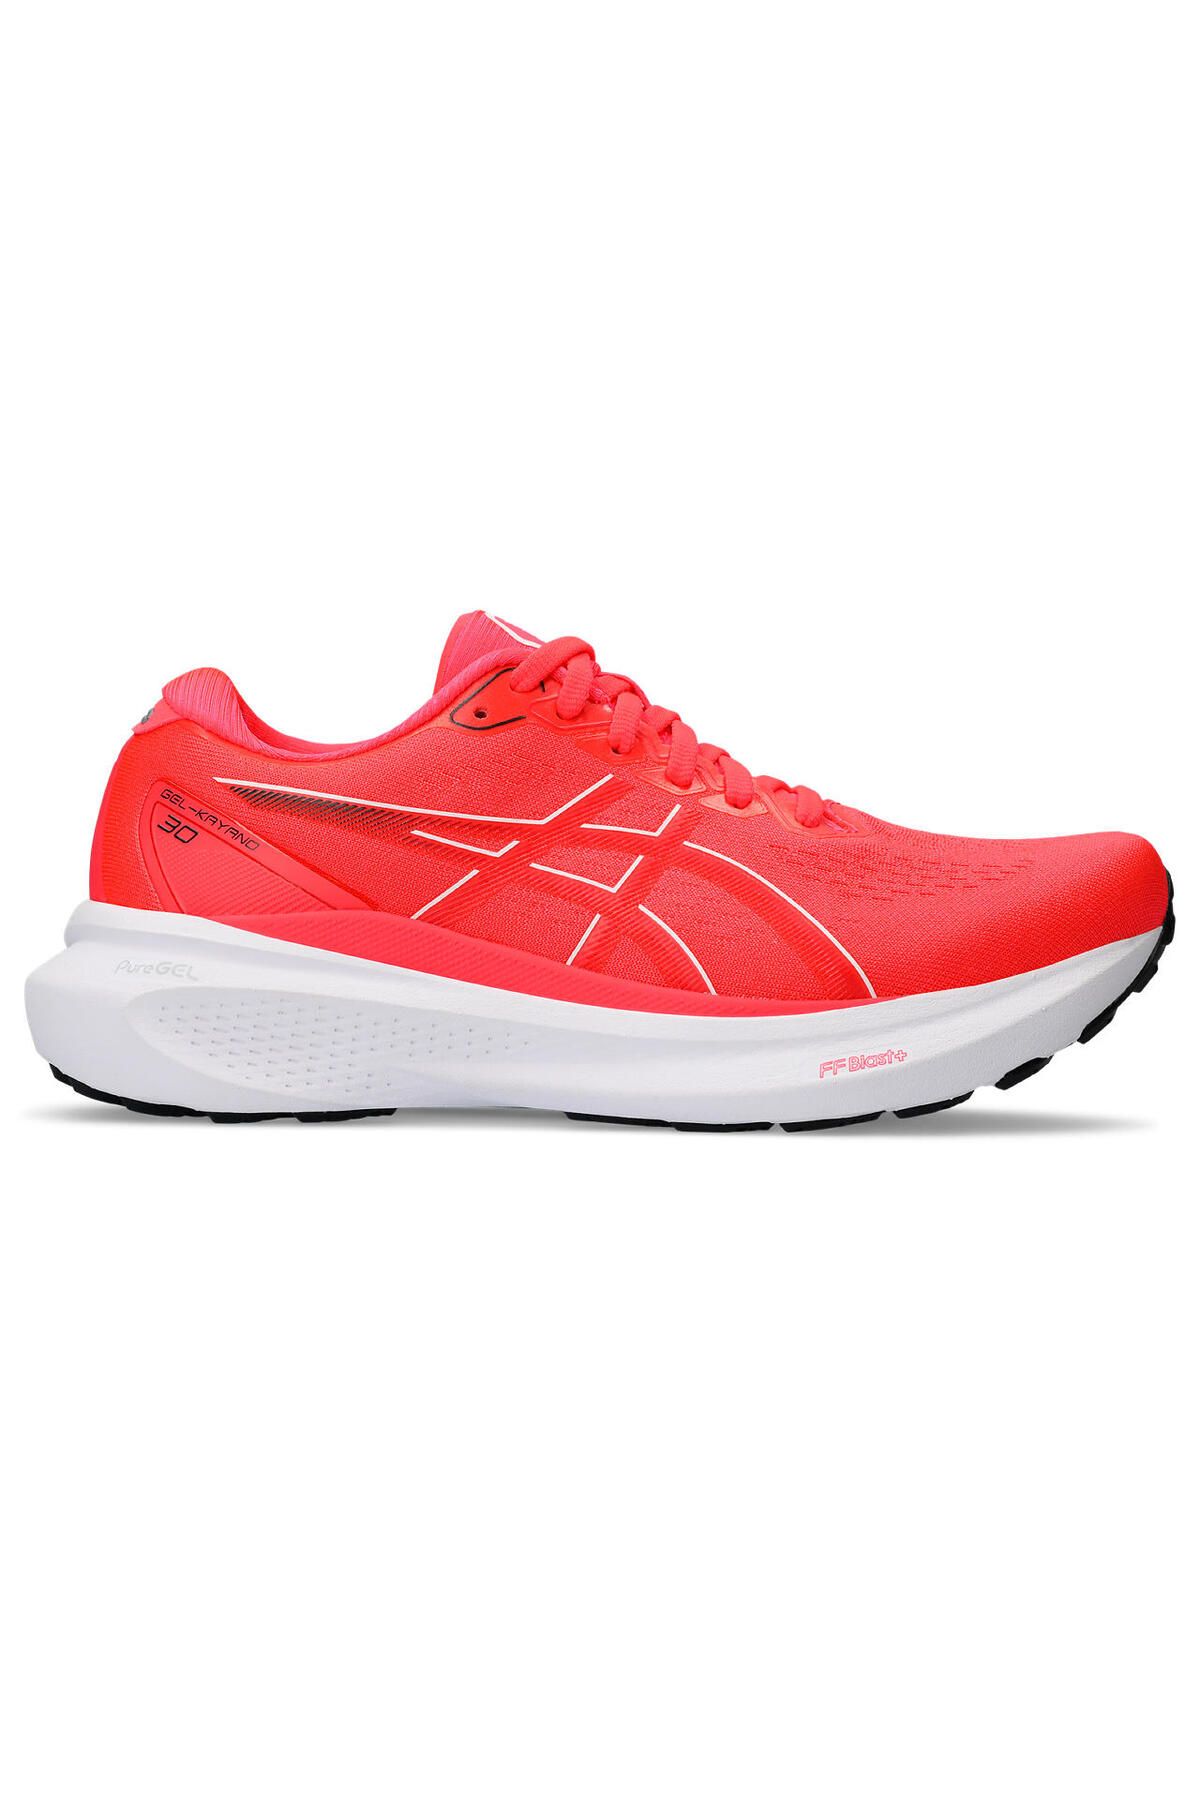 Asics Gel-Kayano 30 Kadın Kırmızı Koşu Ayakkabısı 1012B357-701